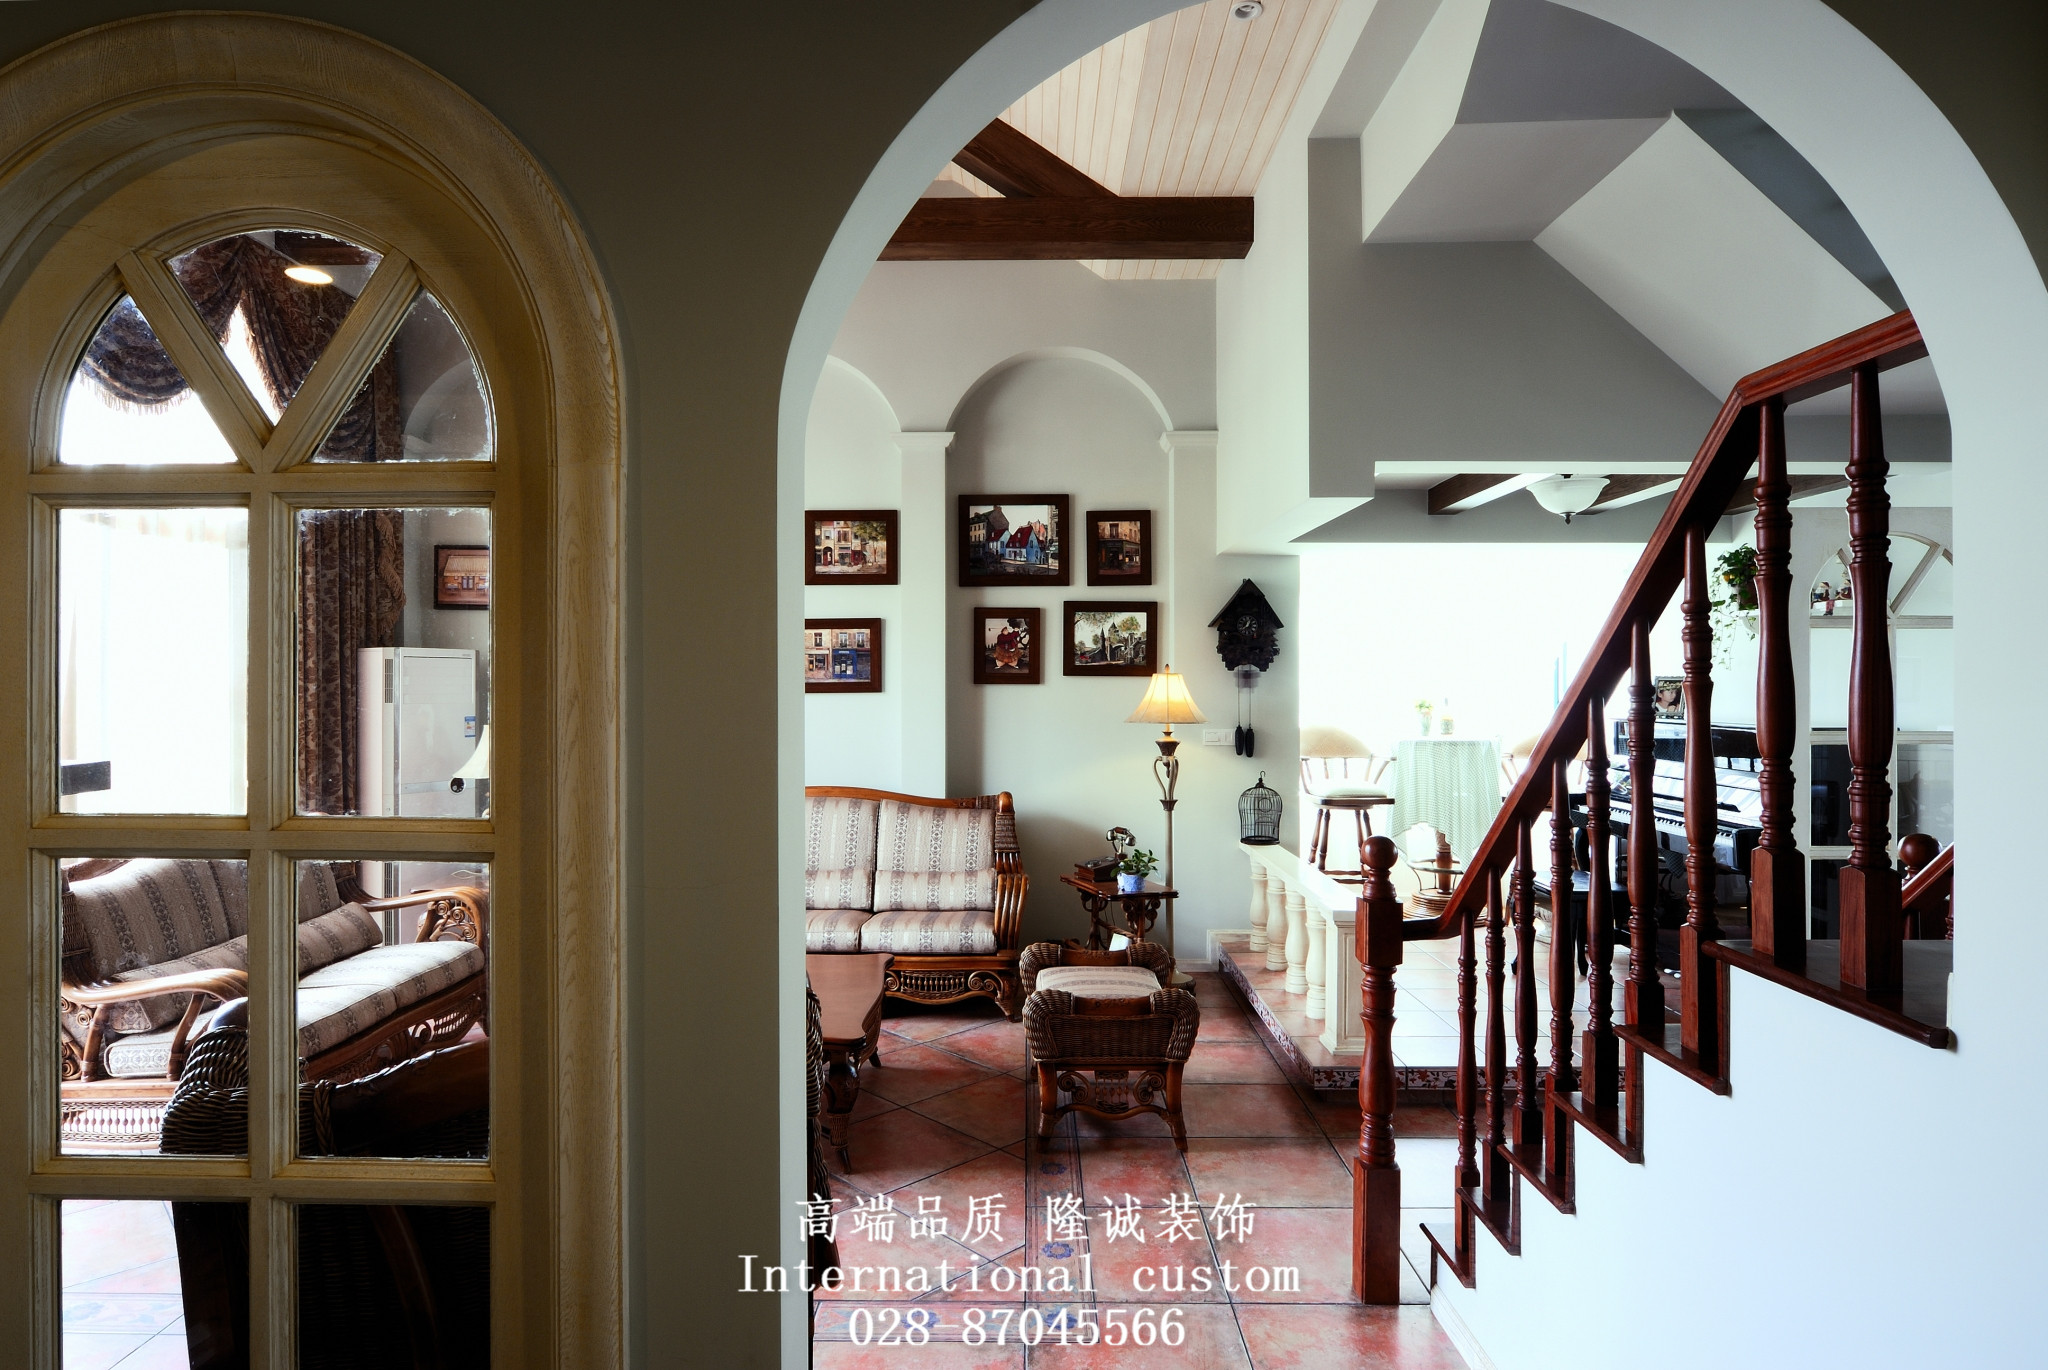 田园 英式 温馨 舒适 复式 收纳 客厅图片来自fy1831303388在西贵堂的分享